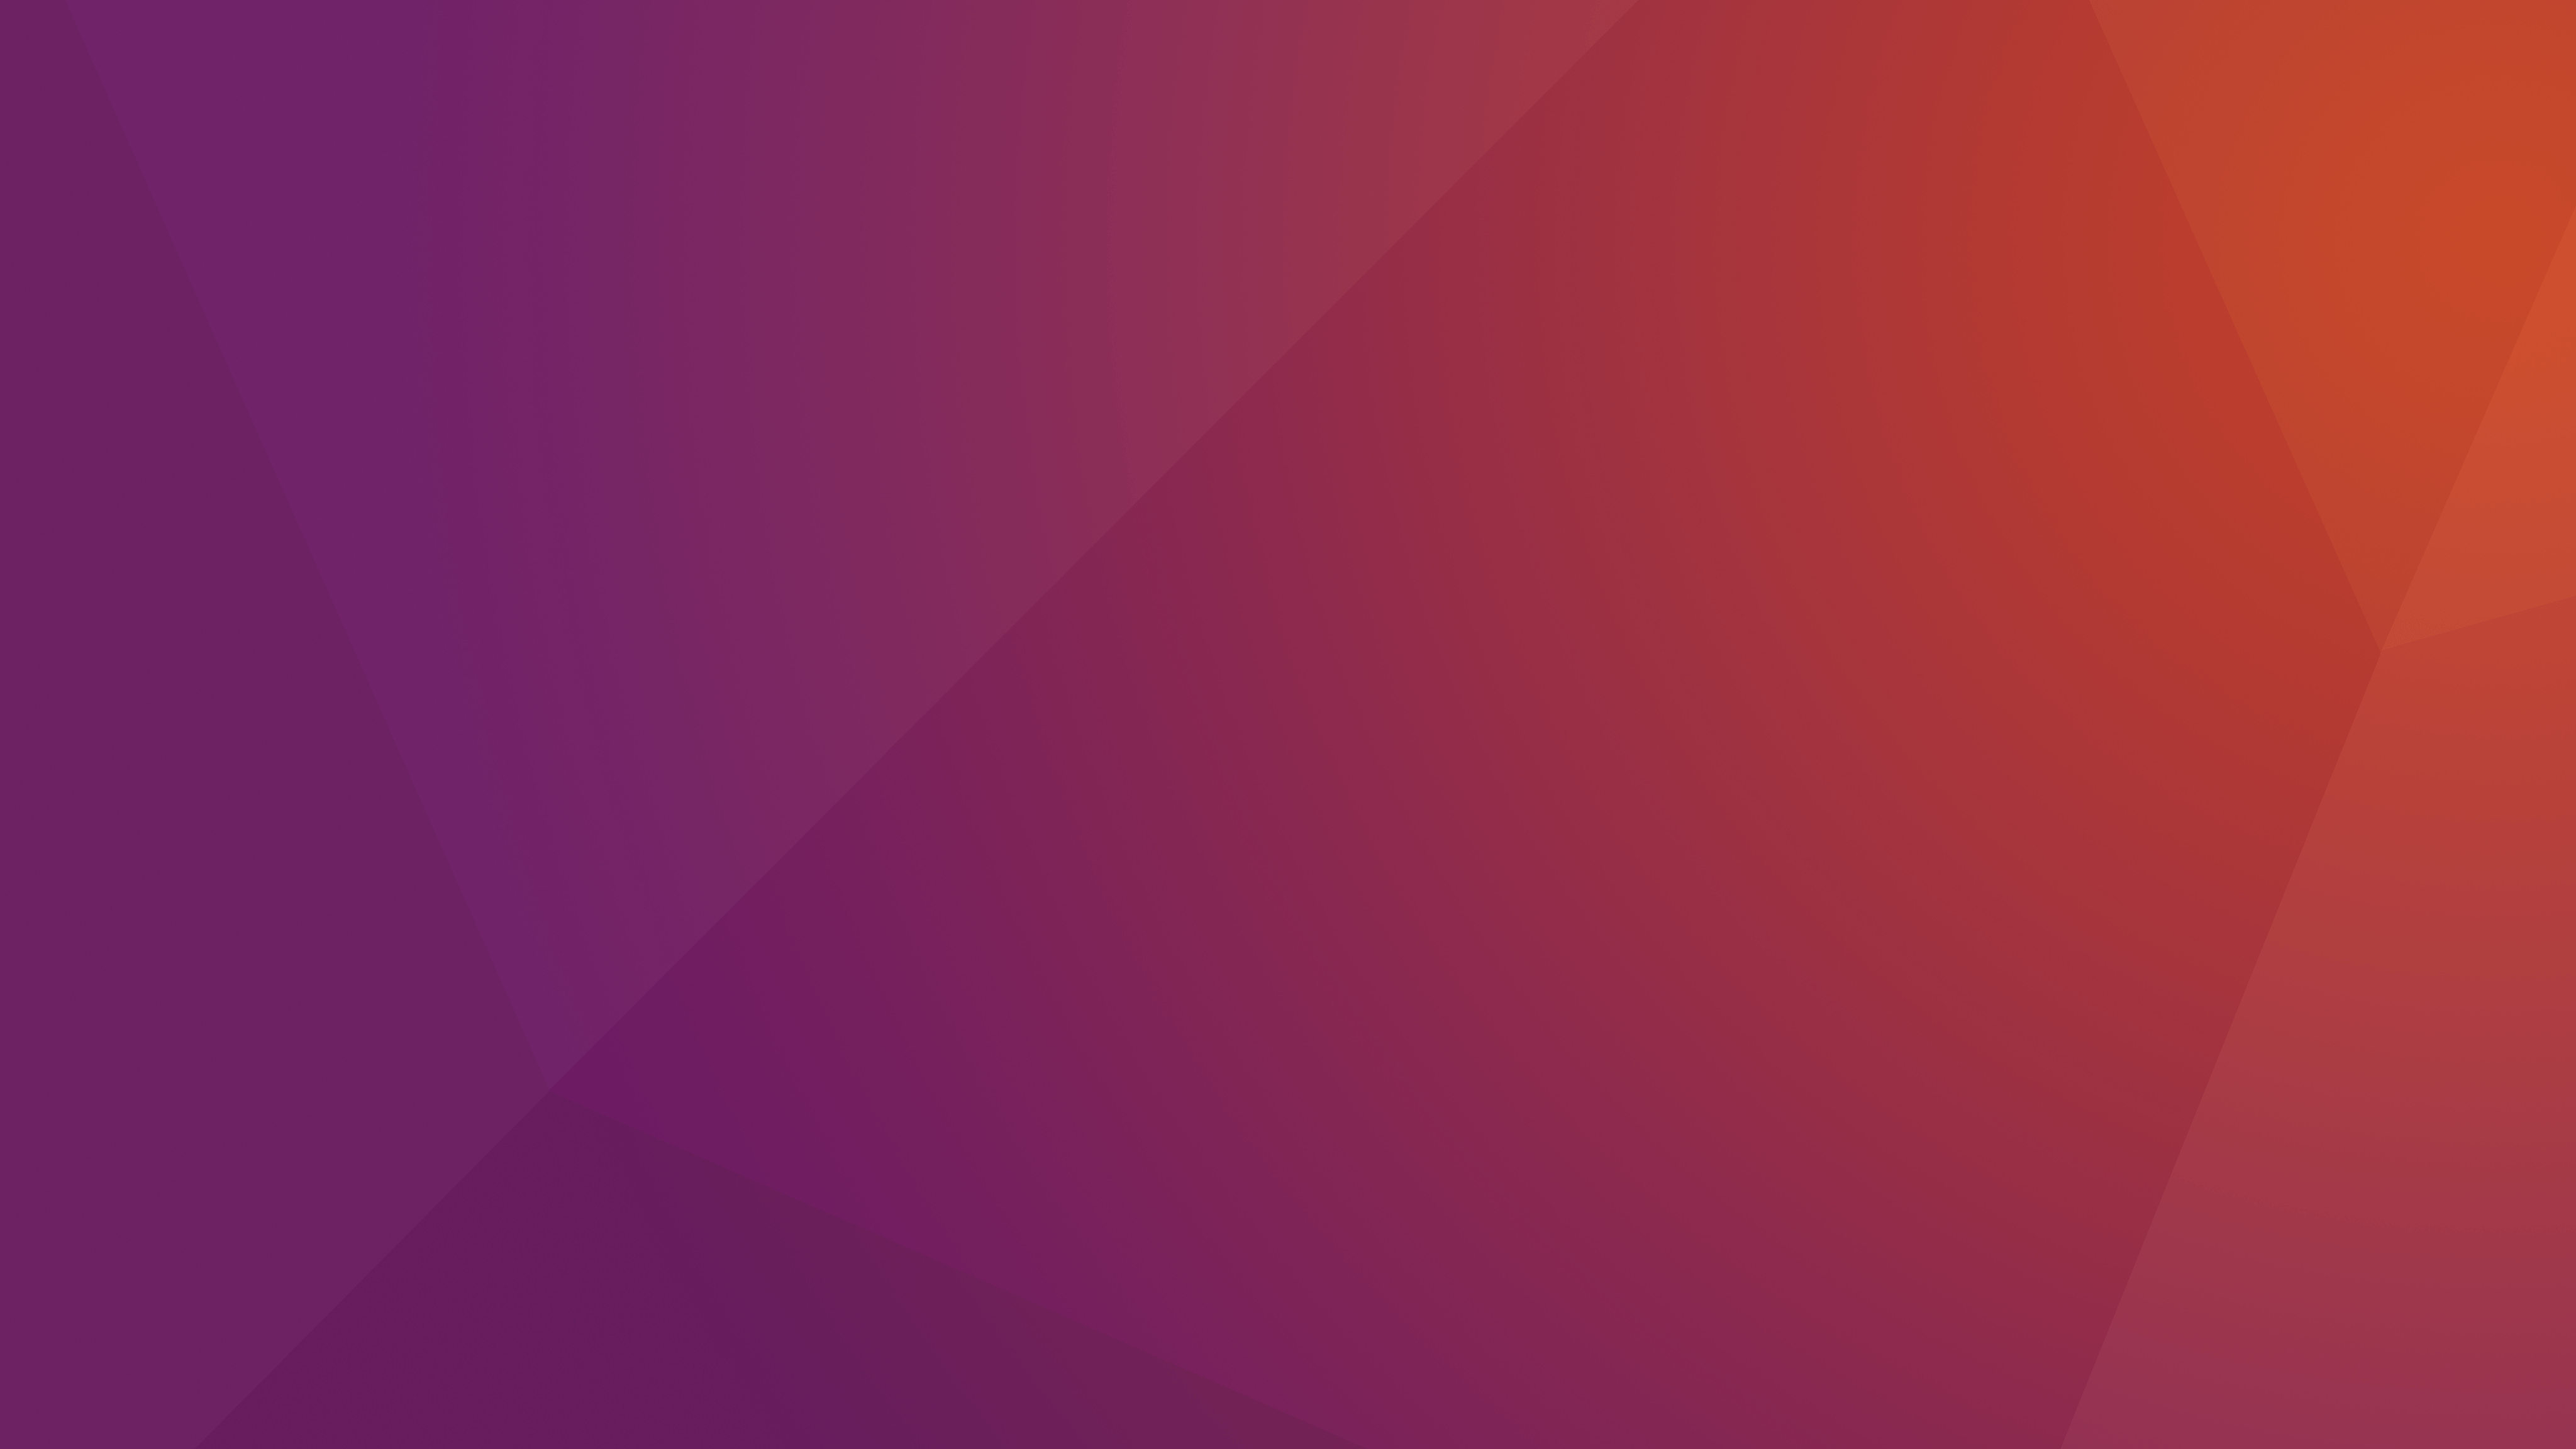 Ubuntu Original 2016 HD, HD Computer, 4k Wallpaper, Image